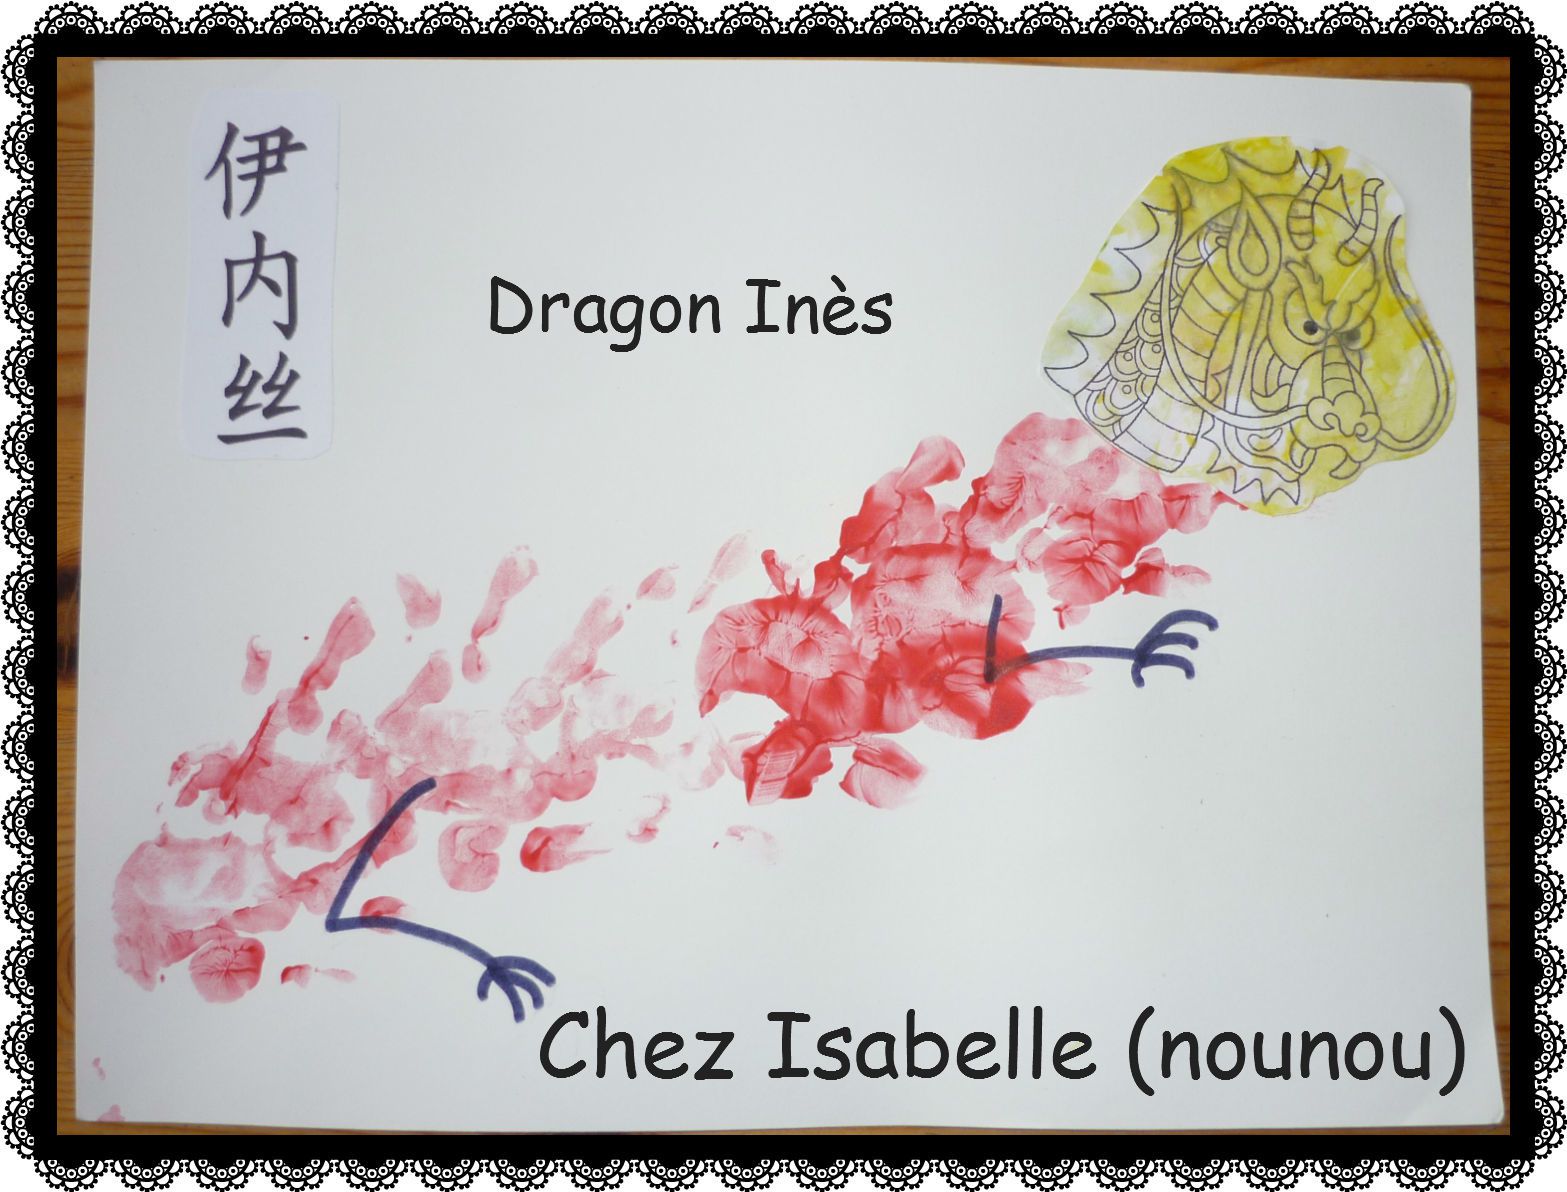 Les dragons chinois des filles - Le blog d'Isabelle (nounou)